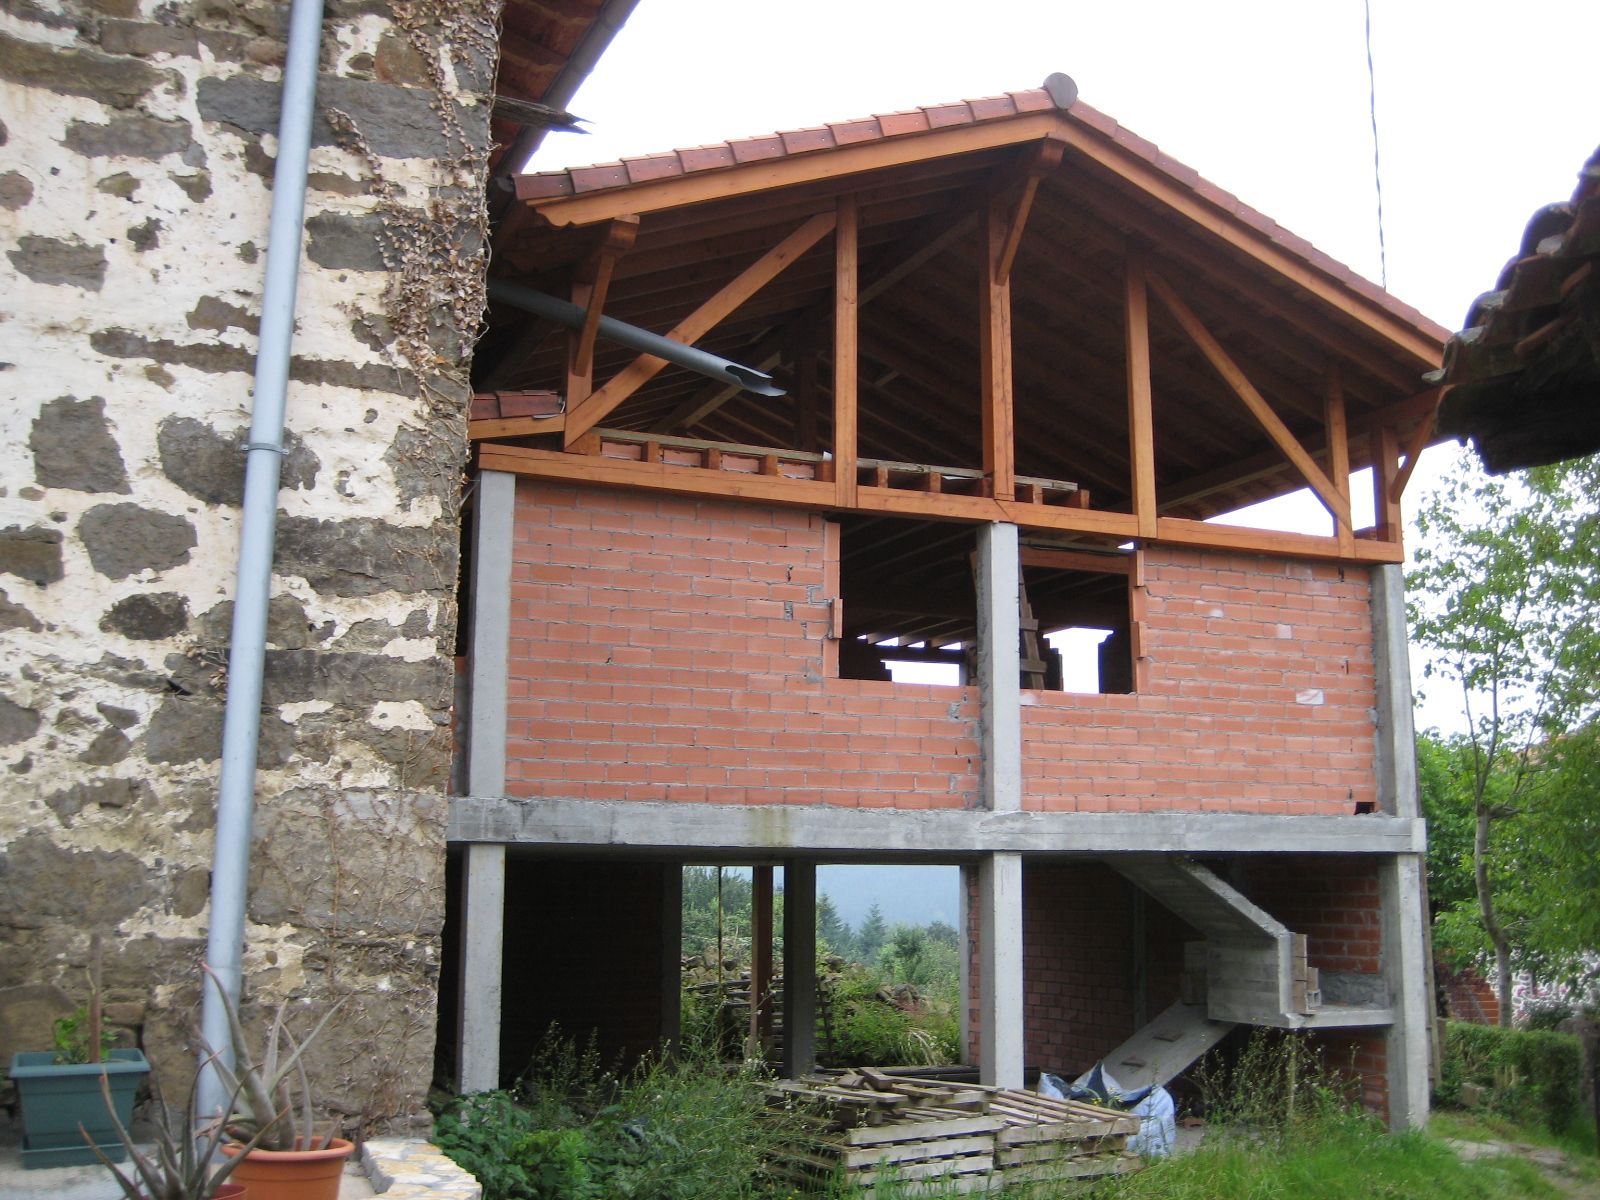 Casa en Zeanuri- B.º/ Ipiñaburu